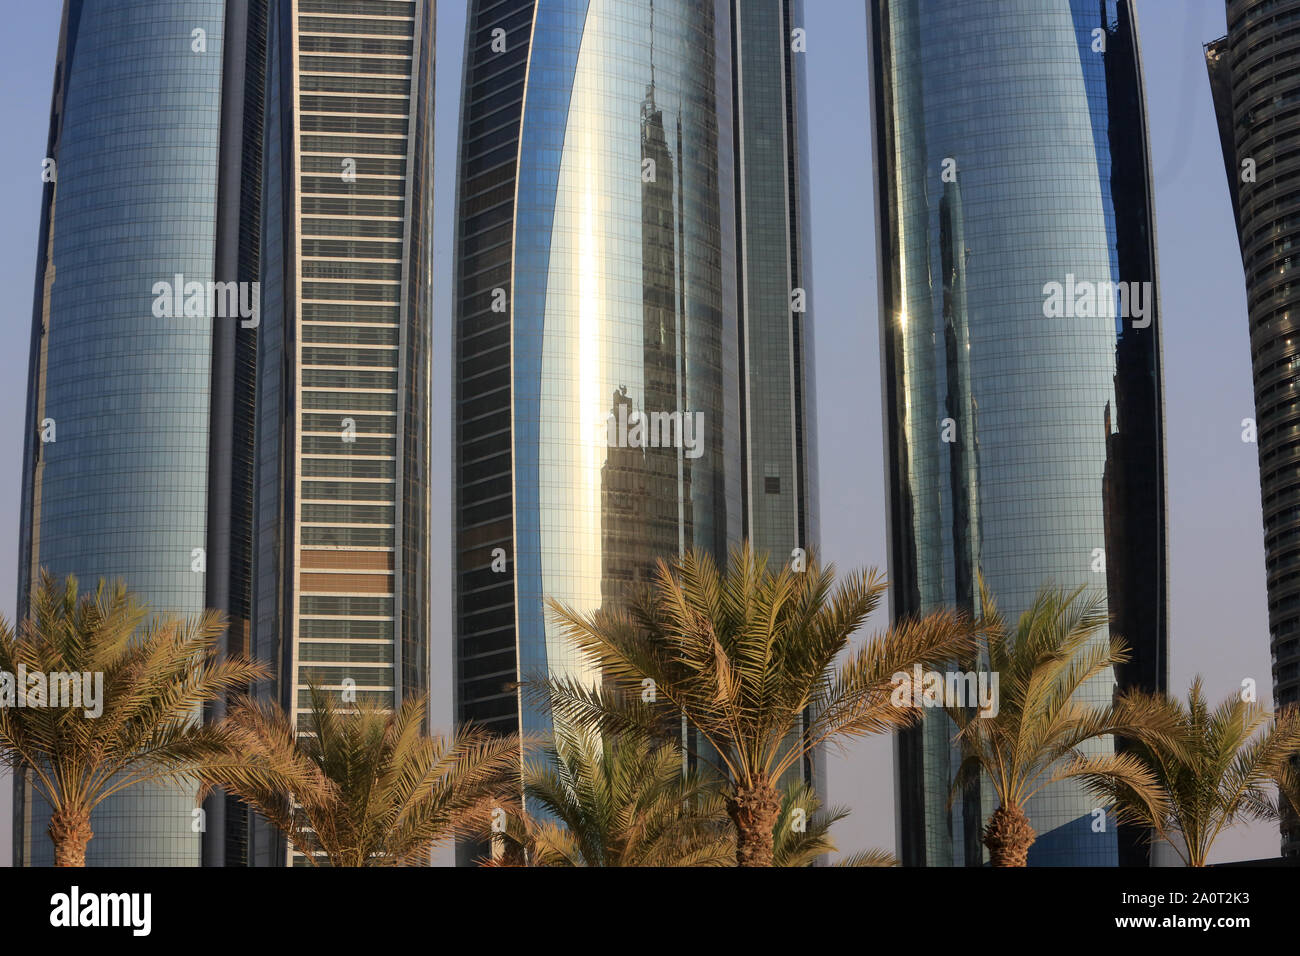 Les tours Etihad. Jumeirah. 2007-2011. Abou Dhabi. Emirats Arabes Unis. / Etihad Towers building complex. Jumeirah. 2007-2011. Emirate of Abu Dhabi. Stock Photo